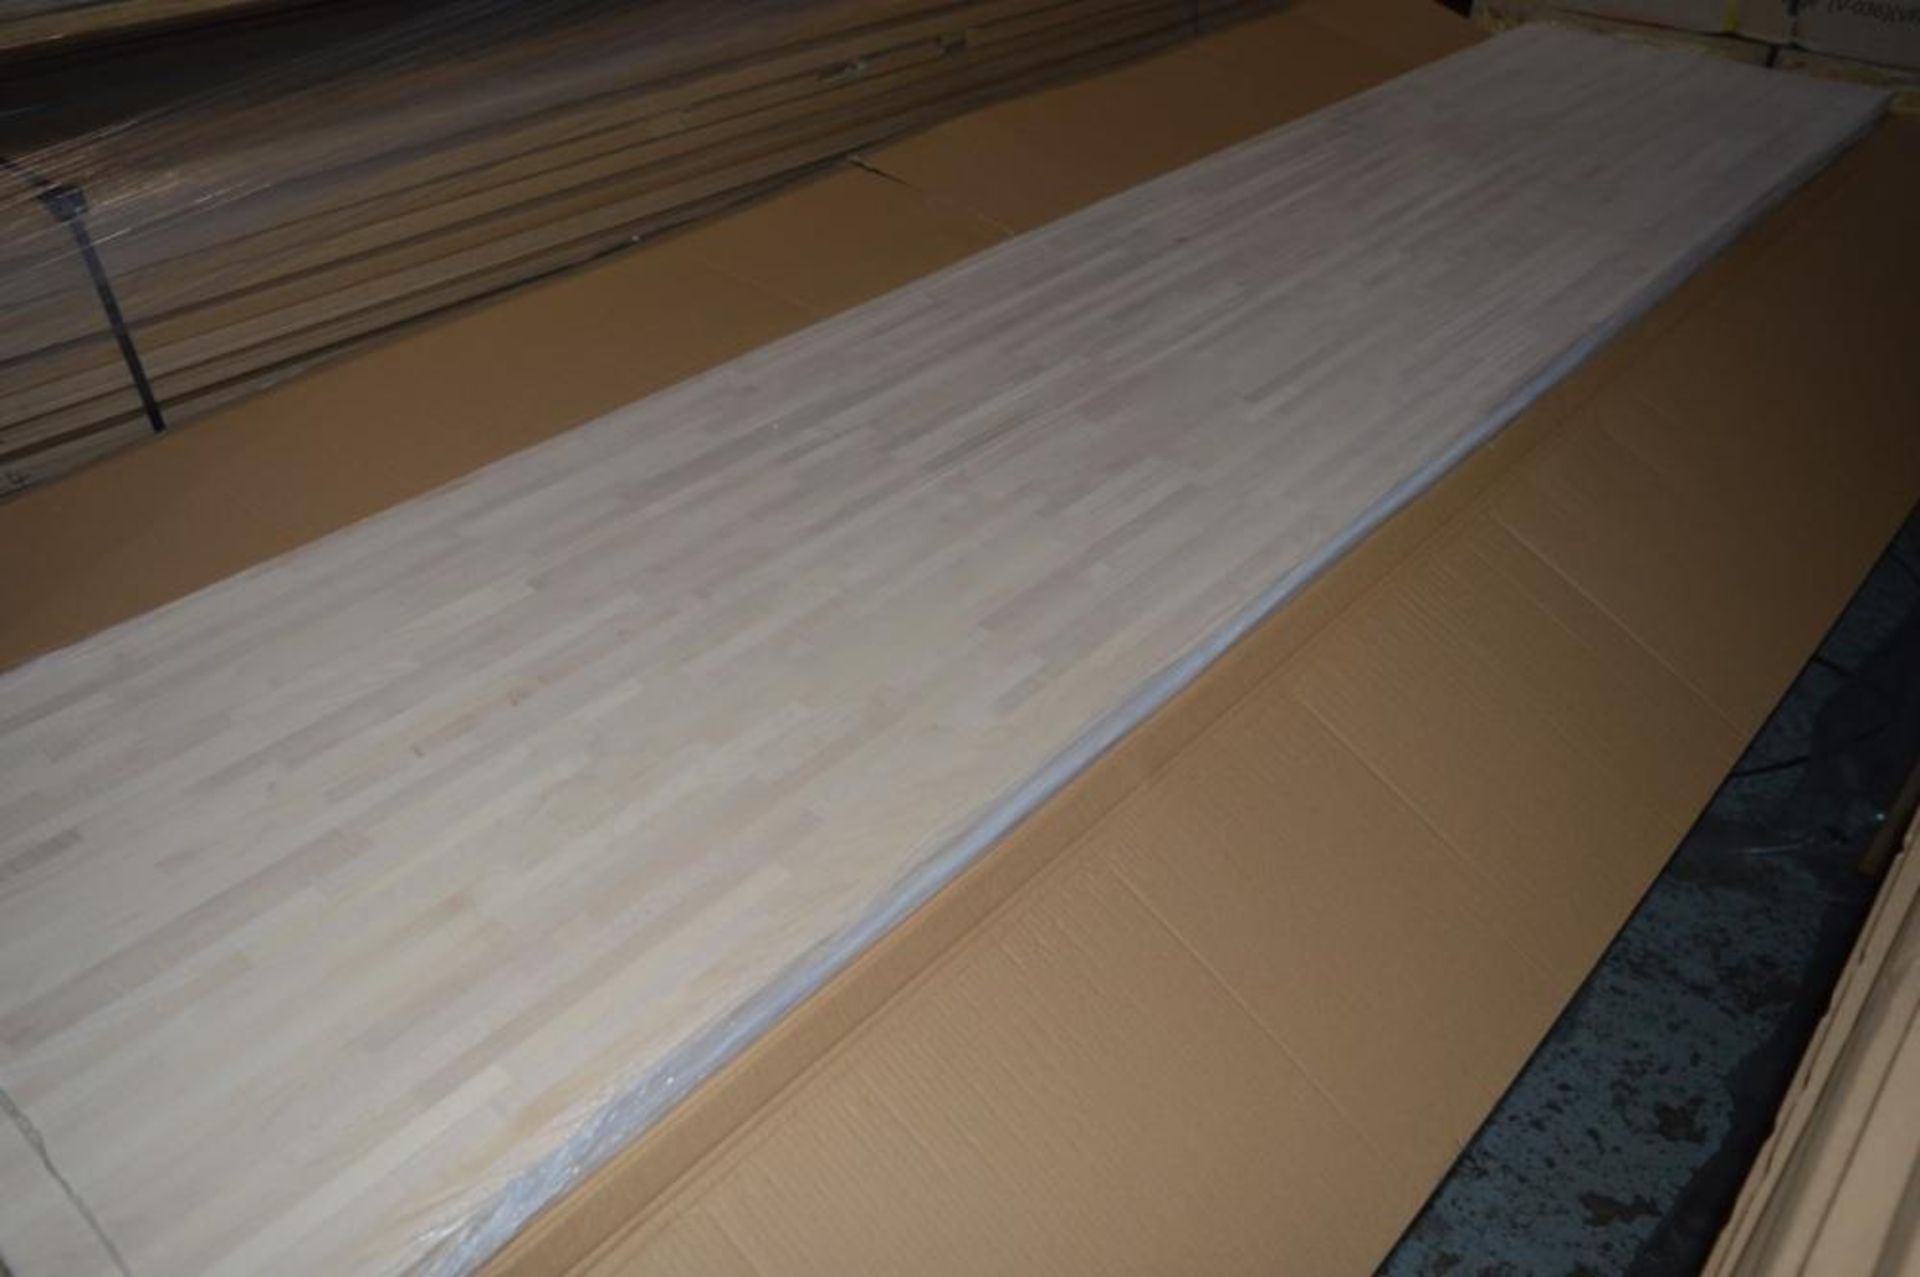 1 x Solid Wood Kitchen Worktop - EUROPEAN MAPLE - Maple Blockwood Kitchen Worktop - Size: 3000 x 650 - Image 2 of 5